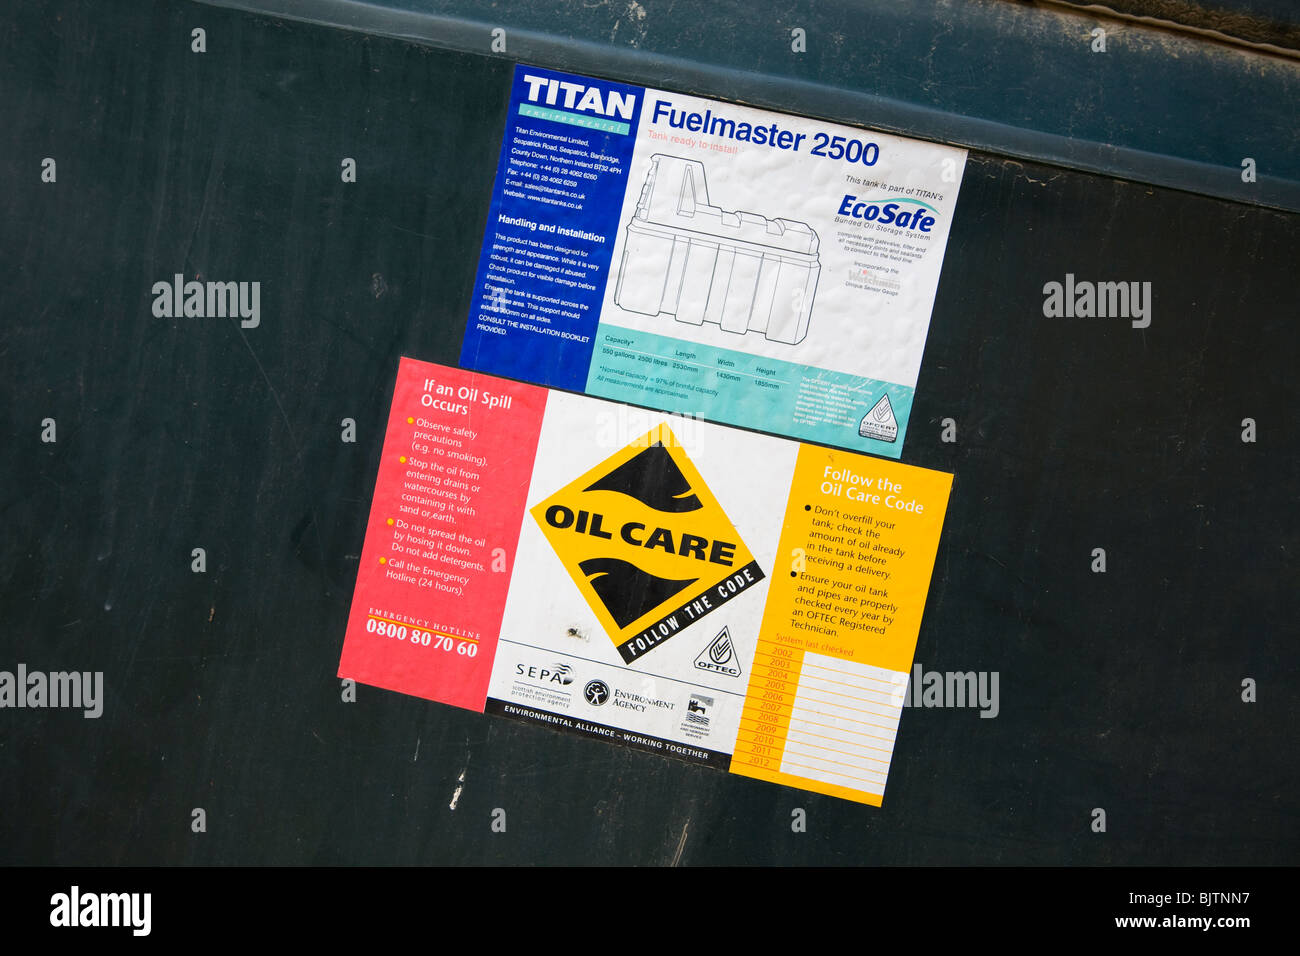 Cura dell'olio etichette di informazioni su Titan Fuelmaster contenitore Foto Stock